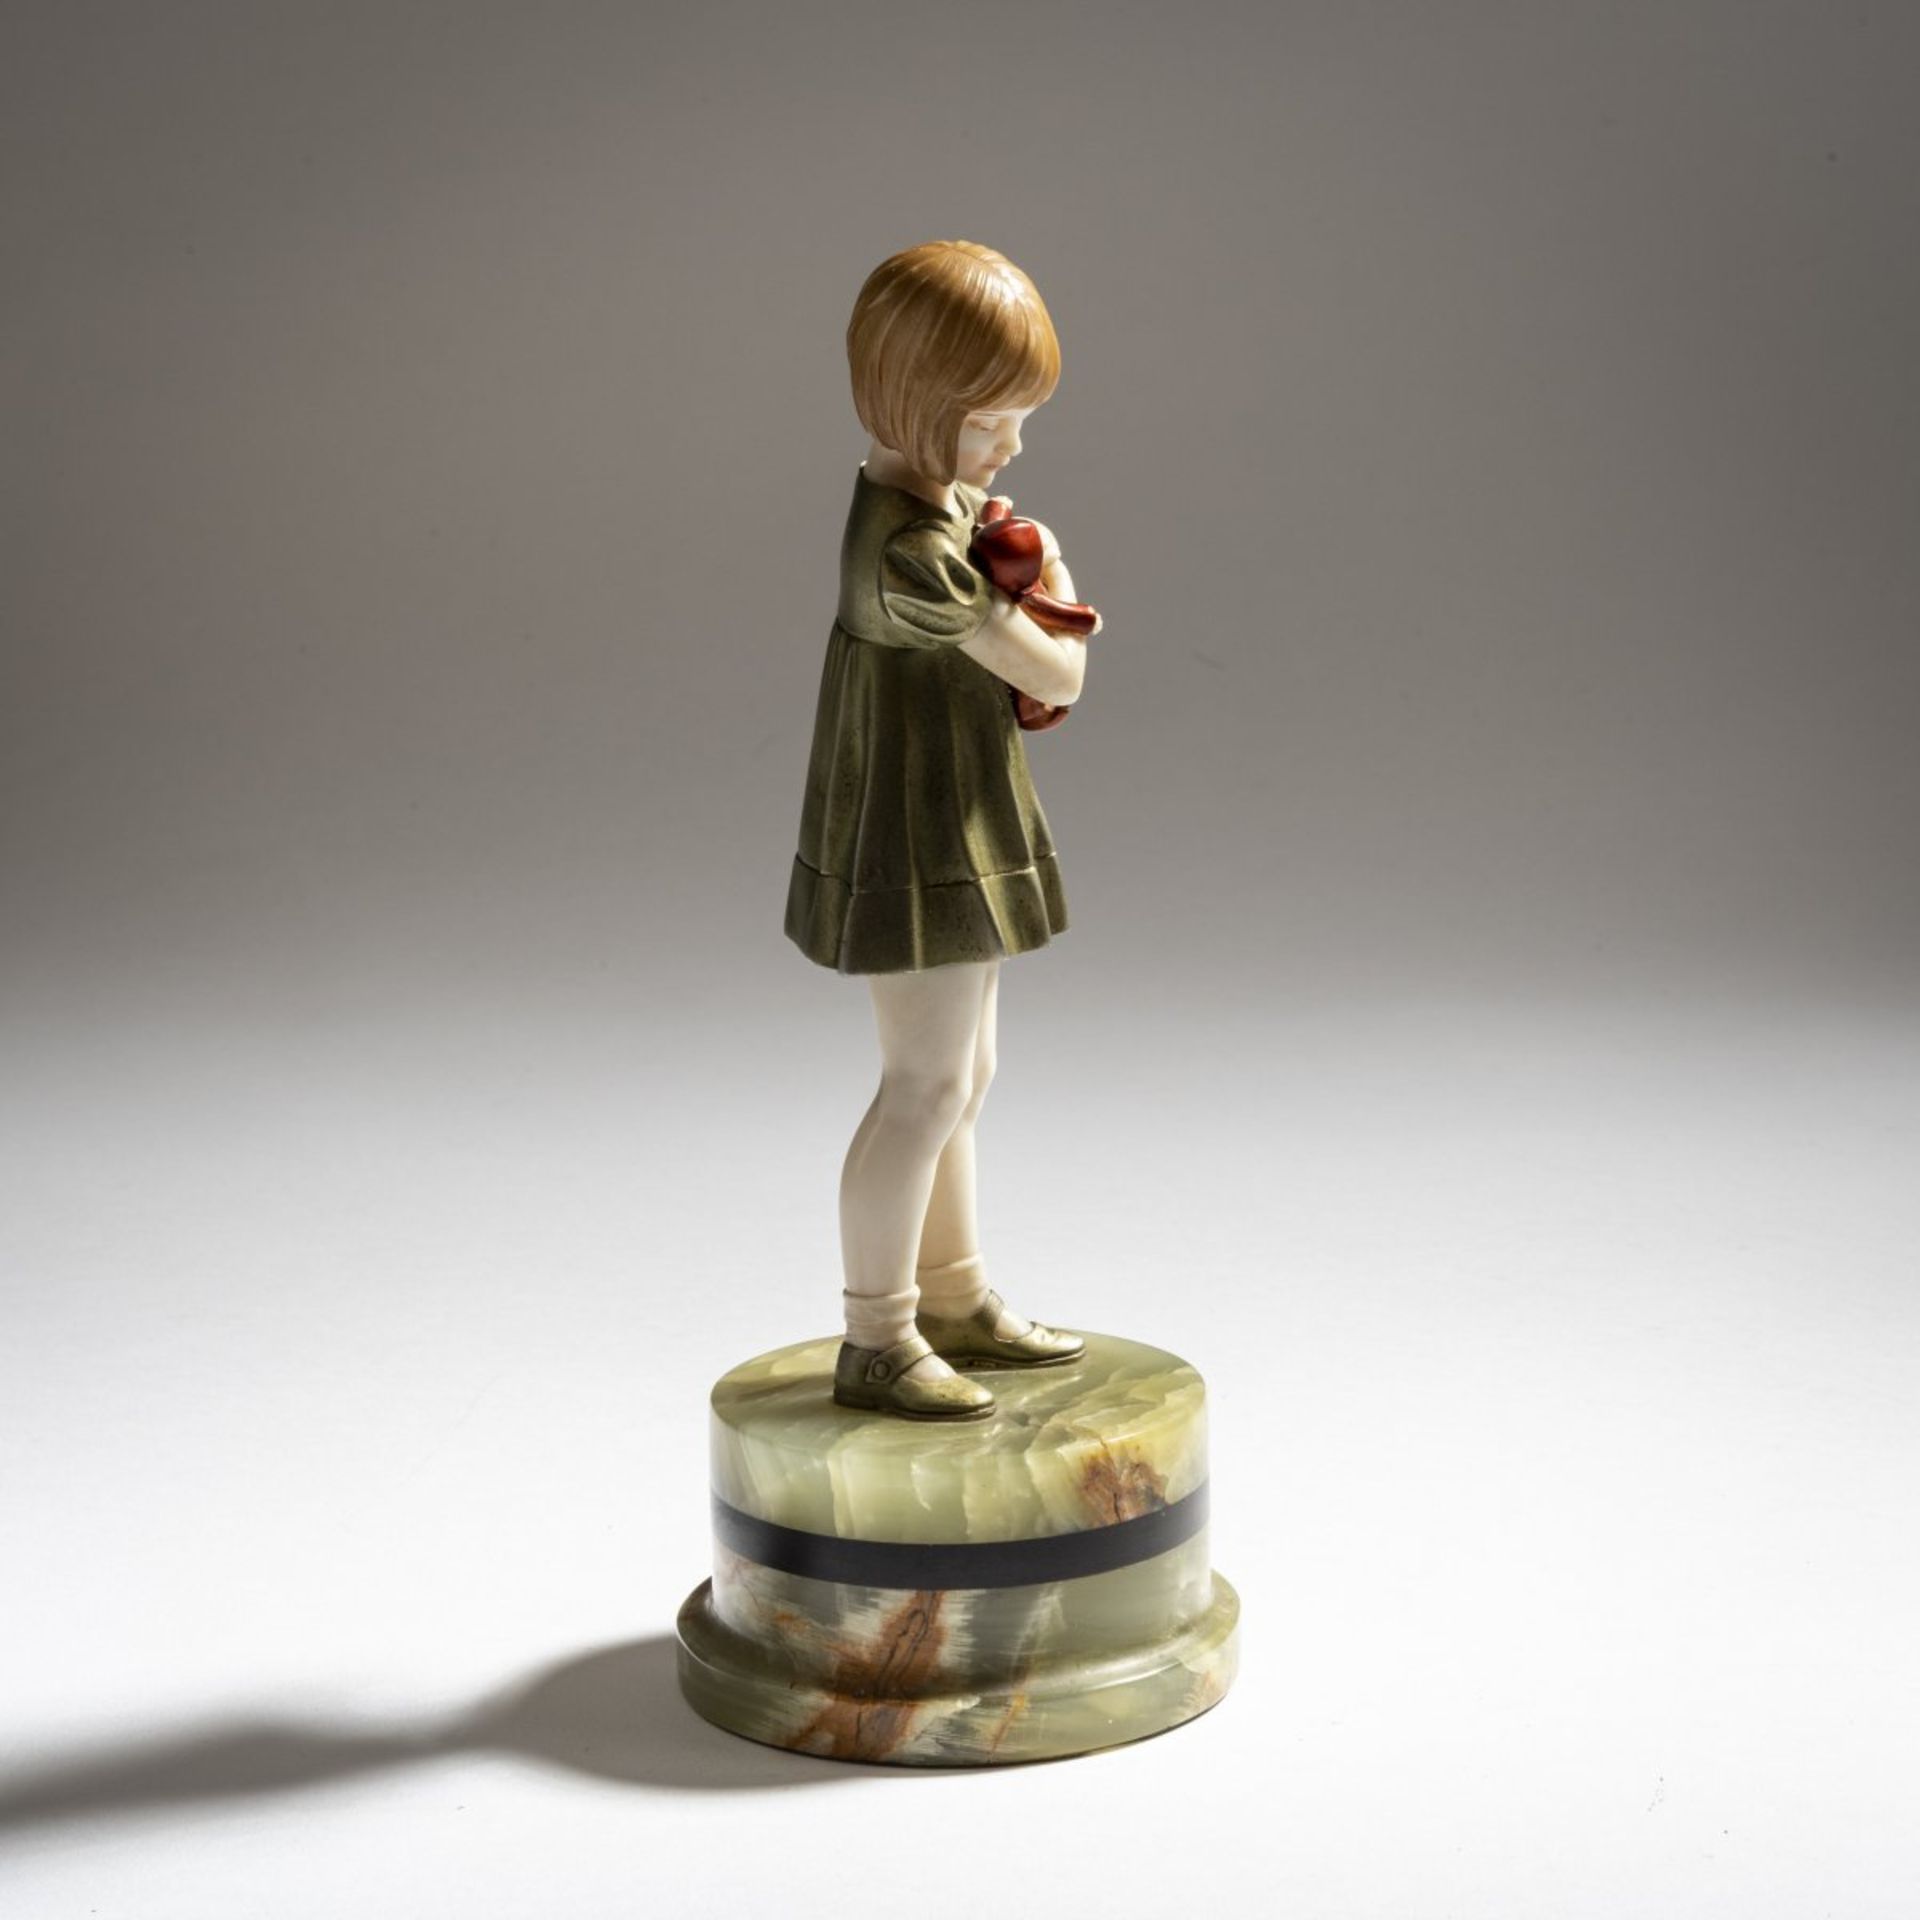 Ferdinand Preiss, 'Girl with a Doll', c. 1930 - Bild 4 aus 9